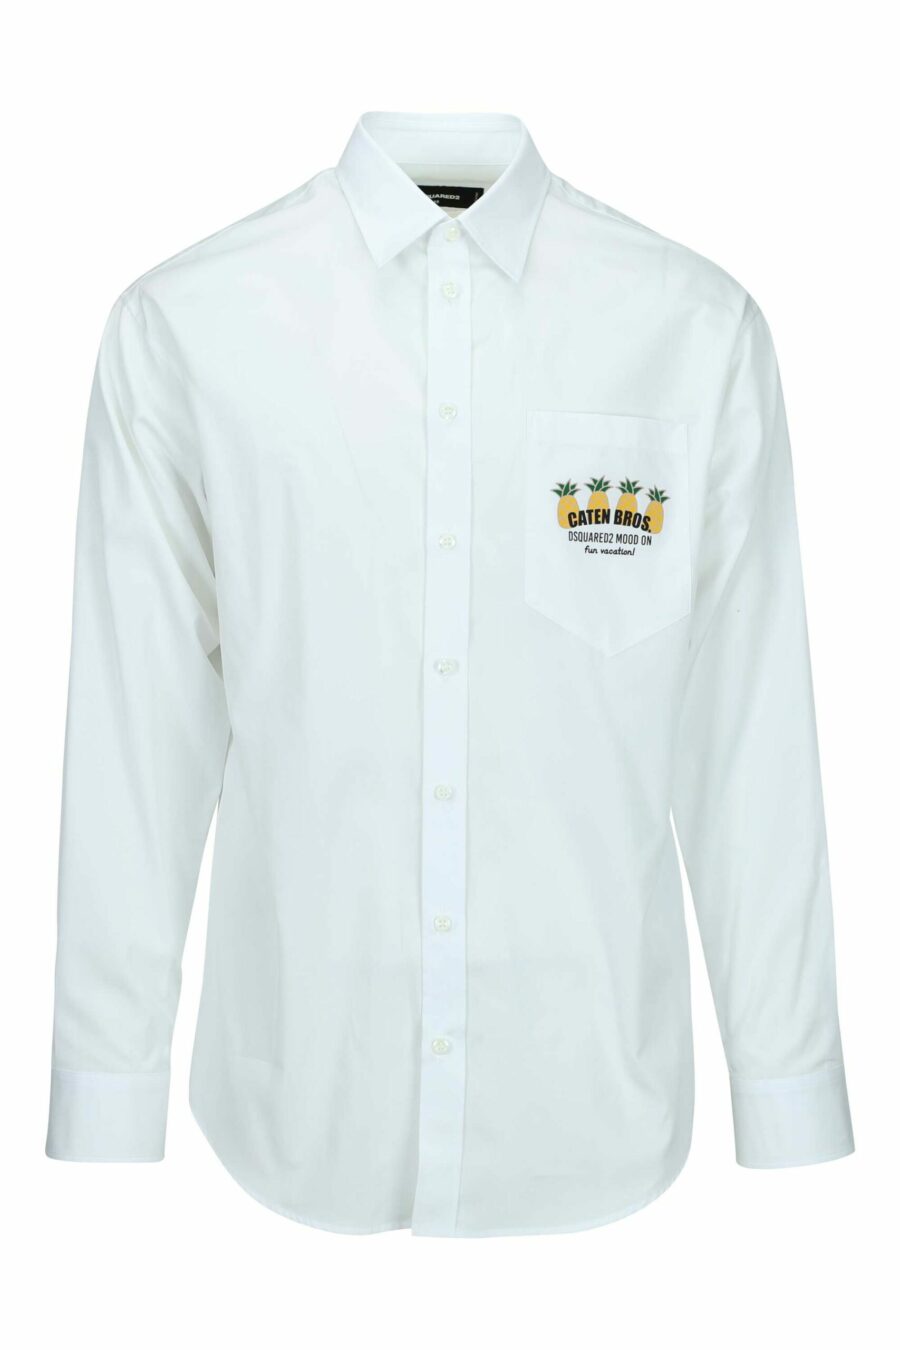 Camisa blanca con minilogo piña - 8054148528201 scaled